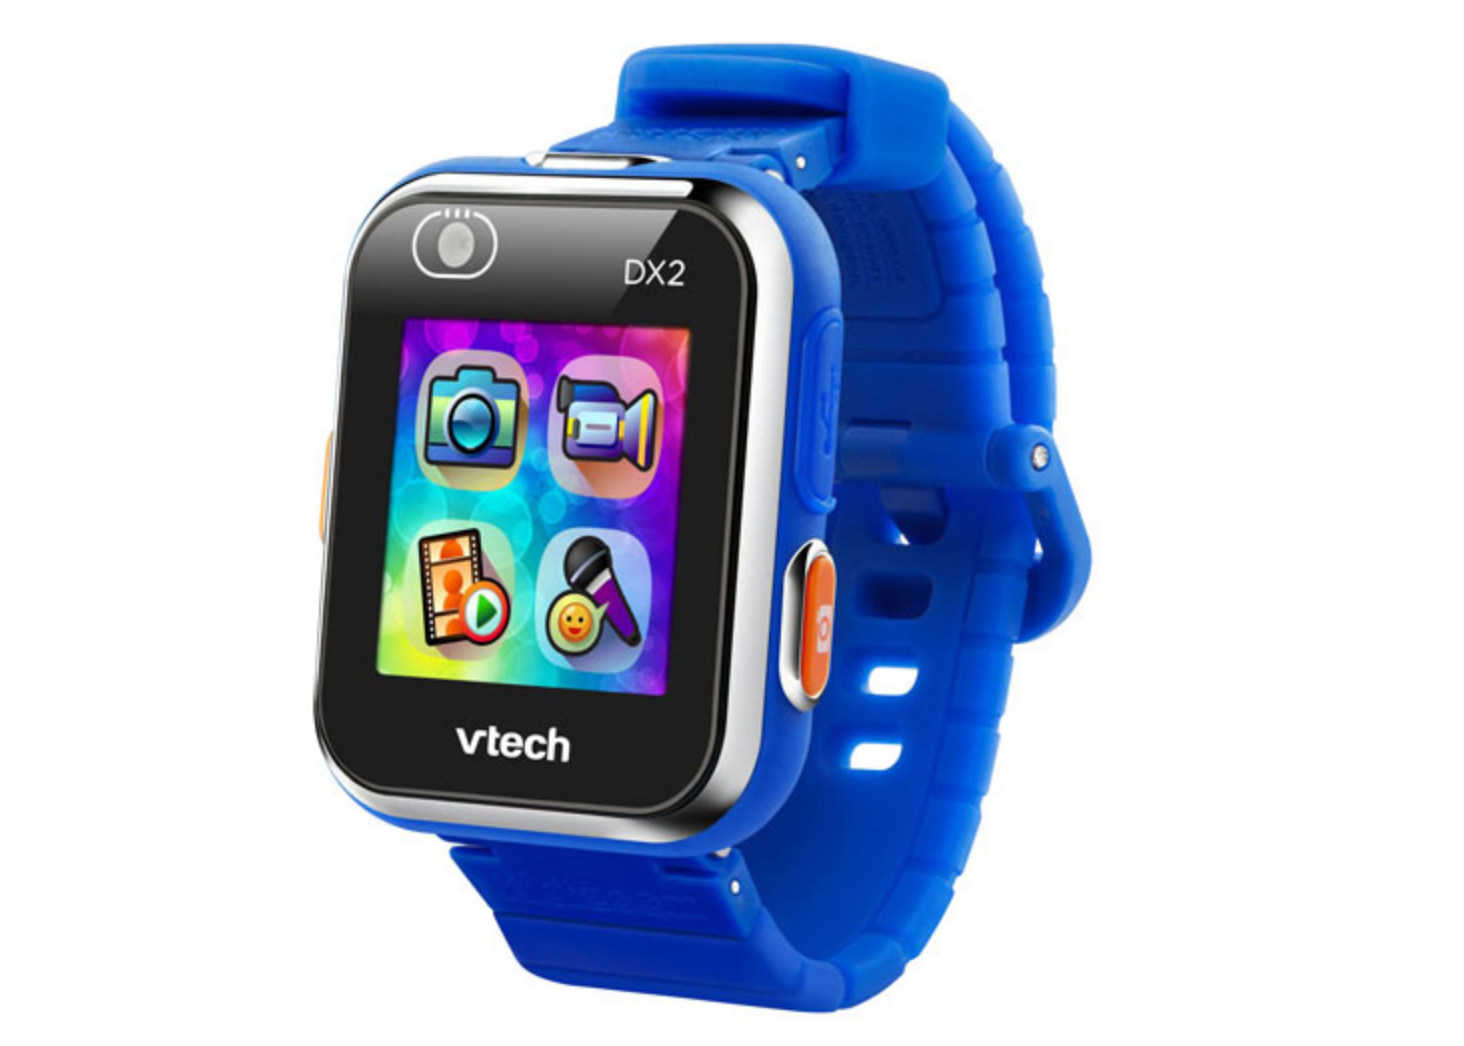 vtech kidizoom dx2 smartwatch